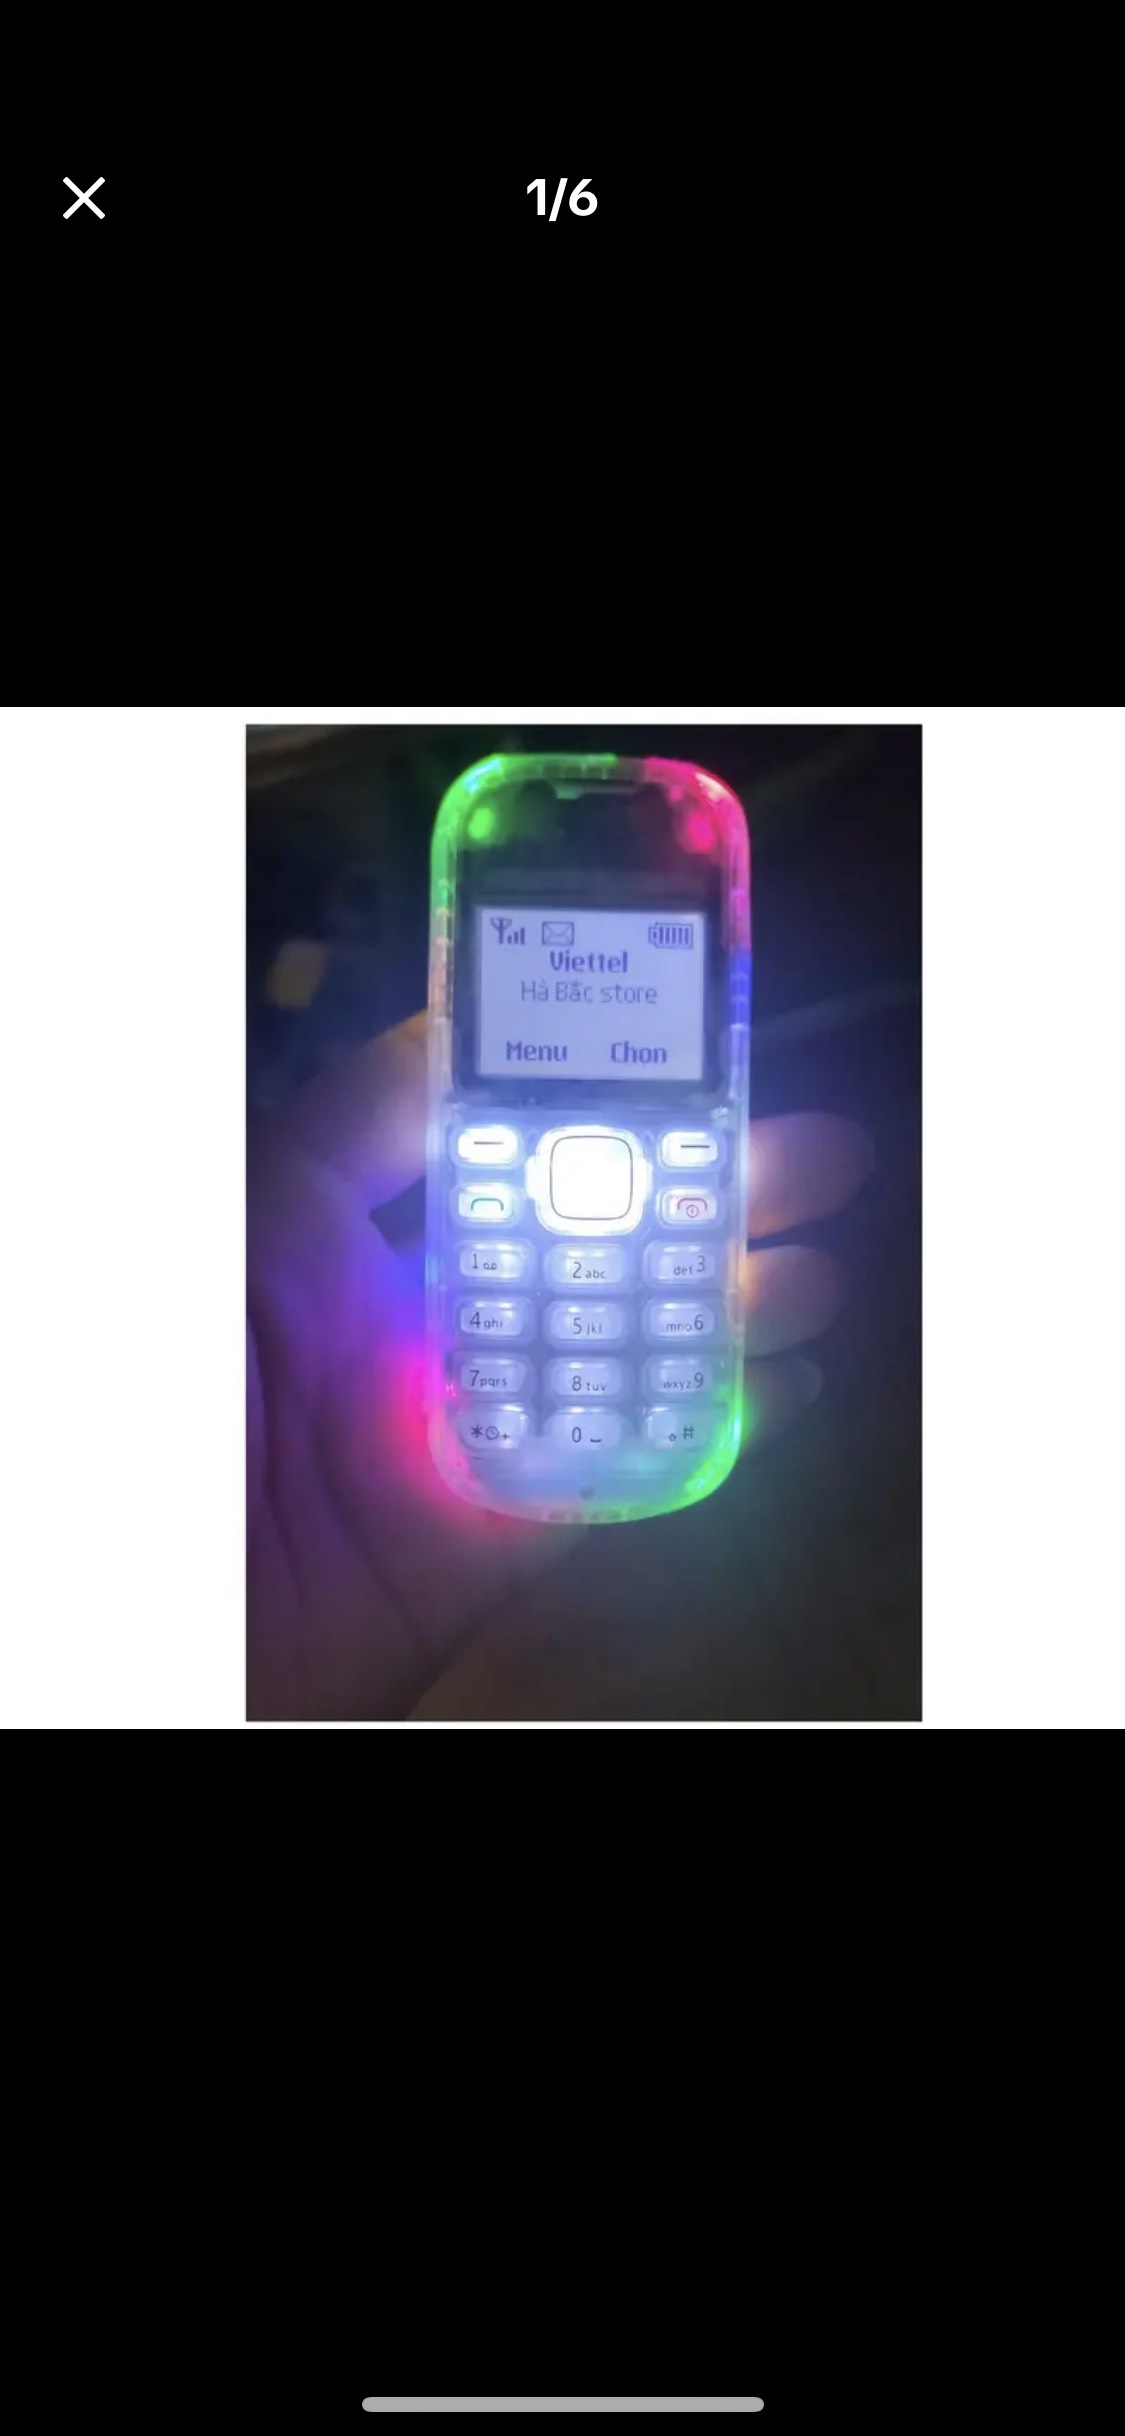 Điện thoại Nokia 1280 không sáng đèn màn hình và 10 lỗi thường gặp - cách  khắc phục | websosanh.vn